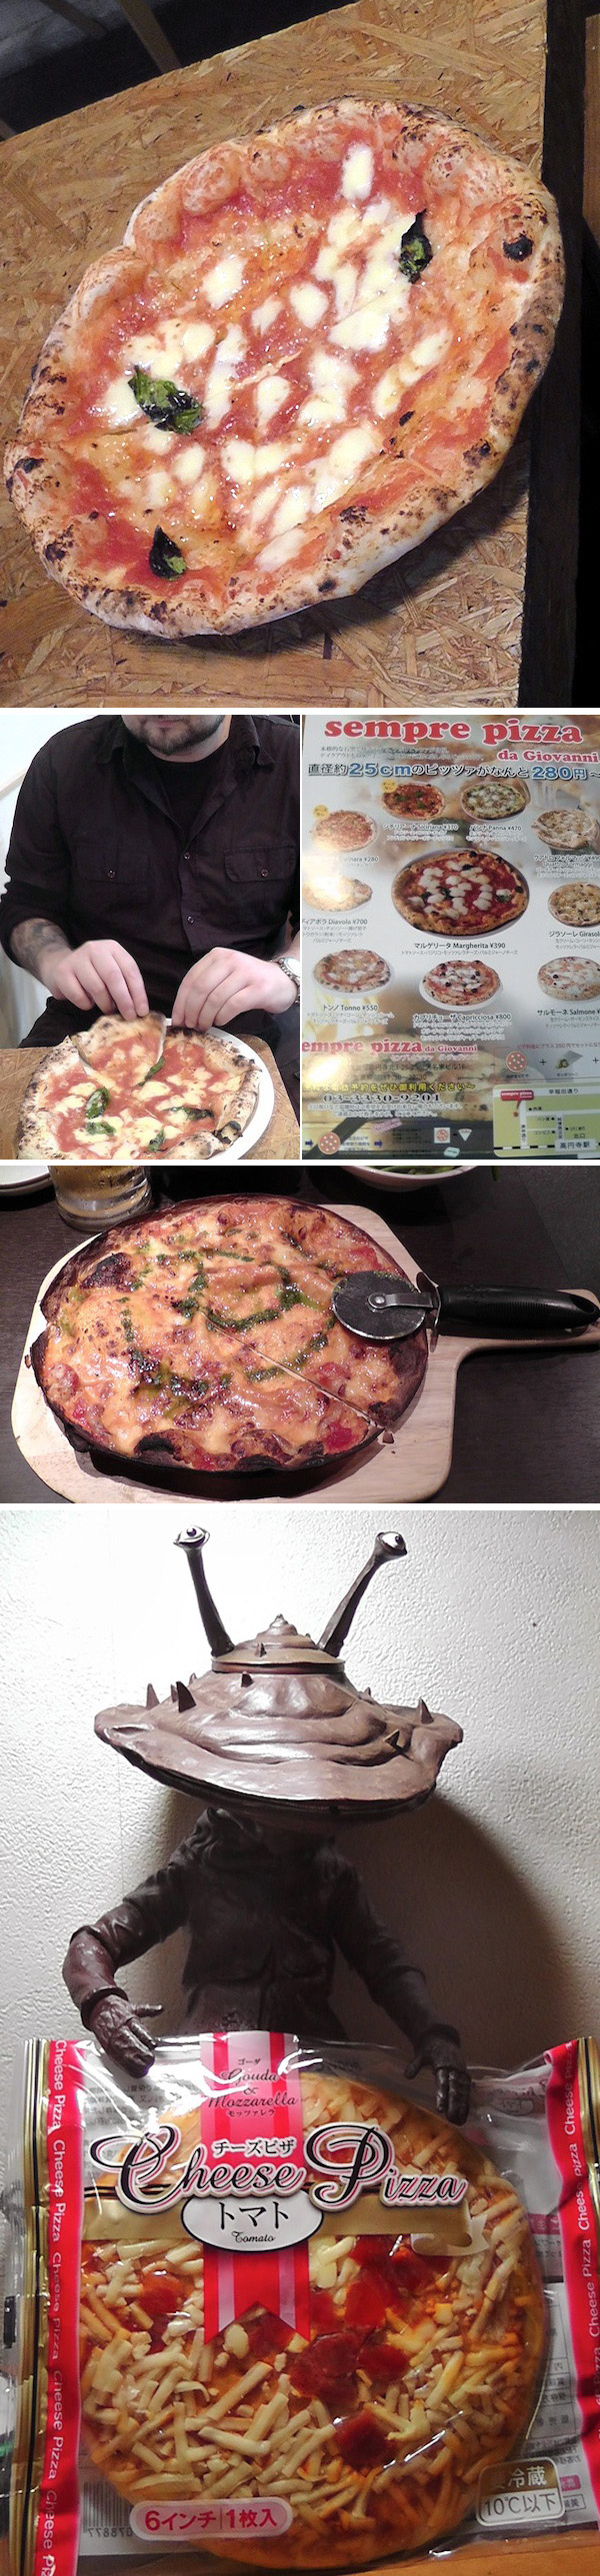 Pizza-Giappone-ok (1)